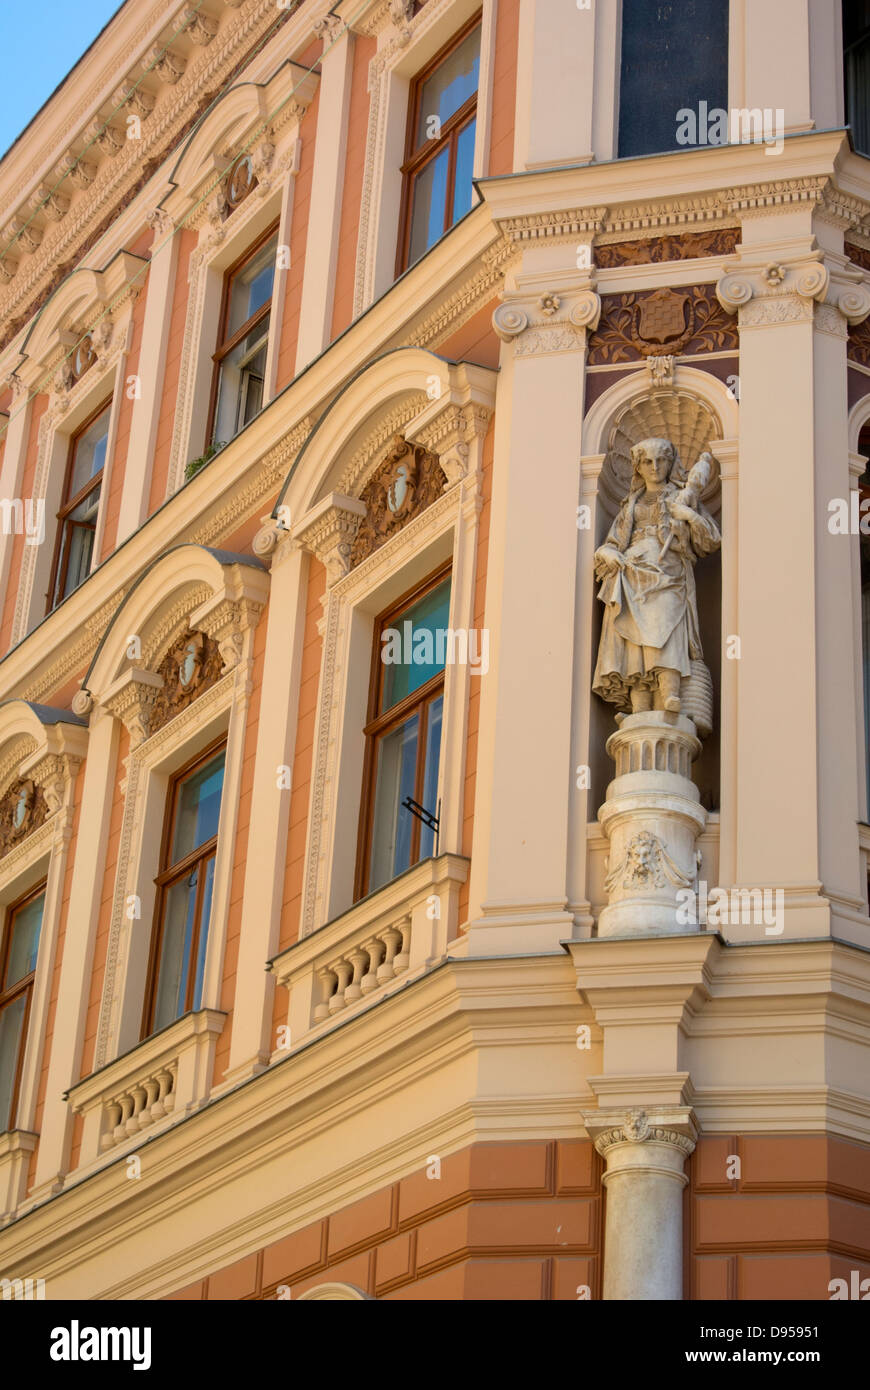 Détail de la façade de l'immeuble, rue 81, Zagreb, Croatie Banque D'Images